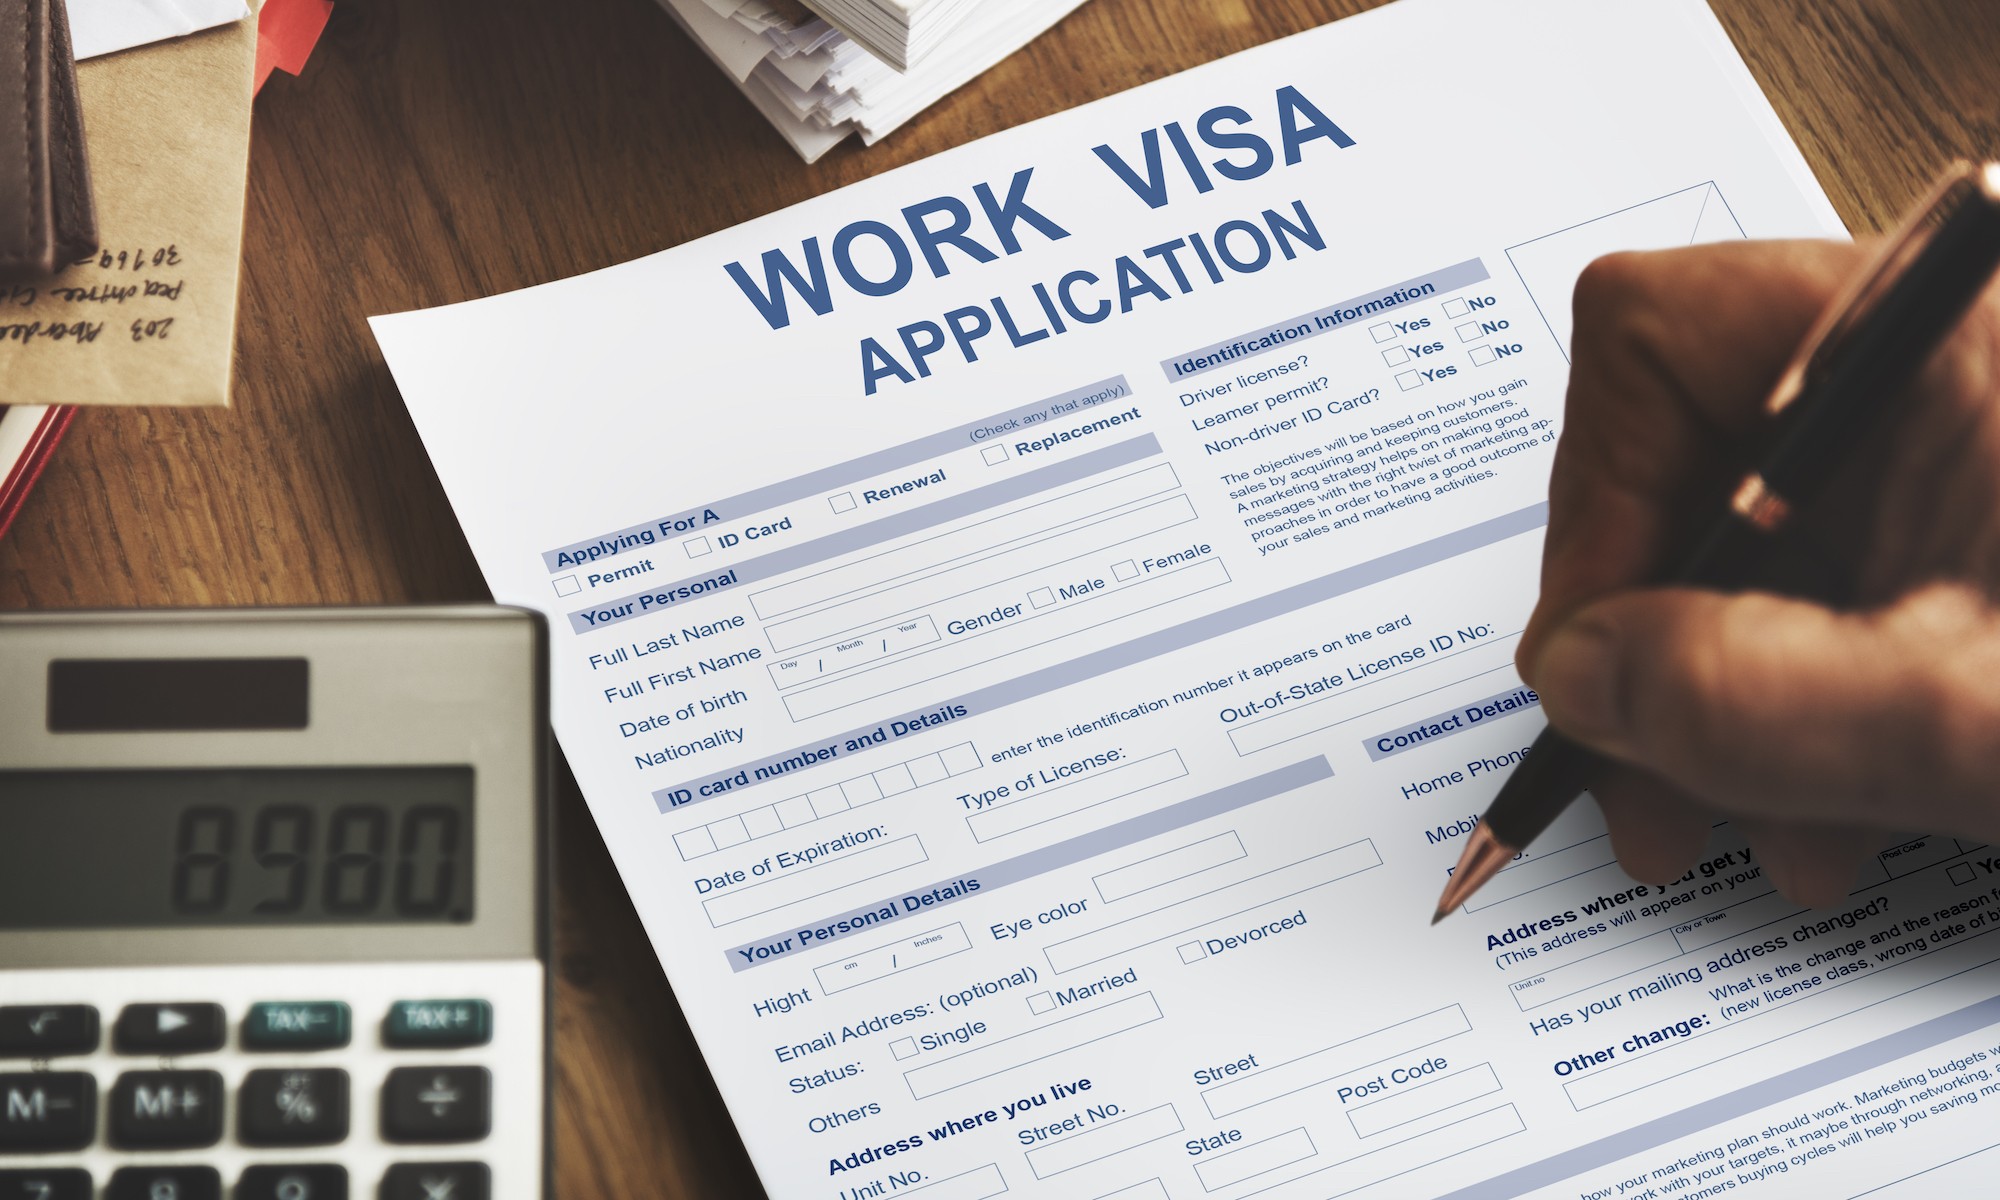 Japon, Royaume-Uni, États-unis : les visas pour les professionnels hautement qualifiés